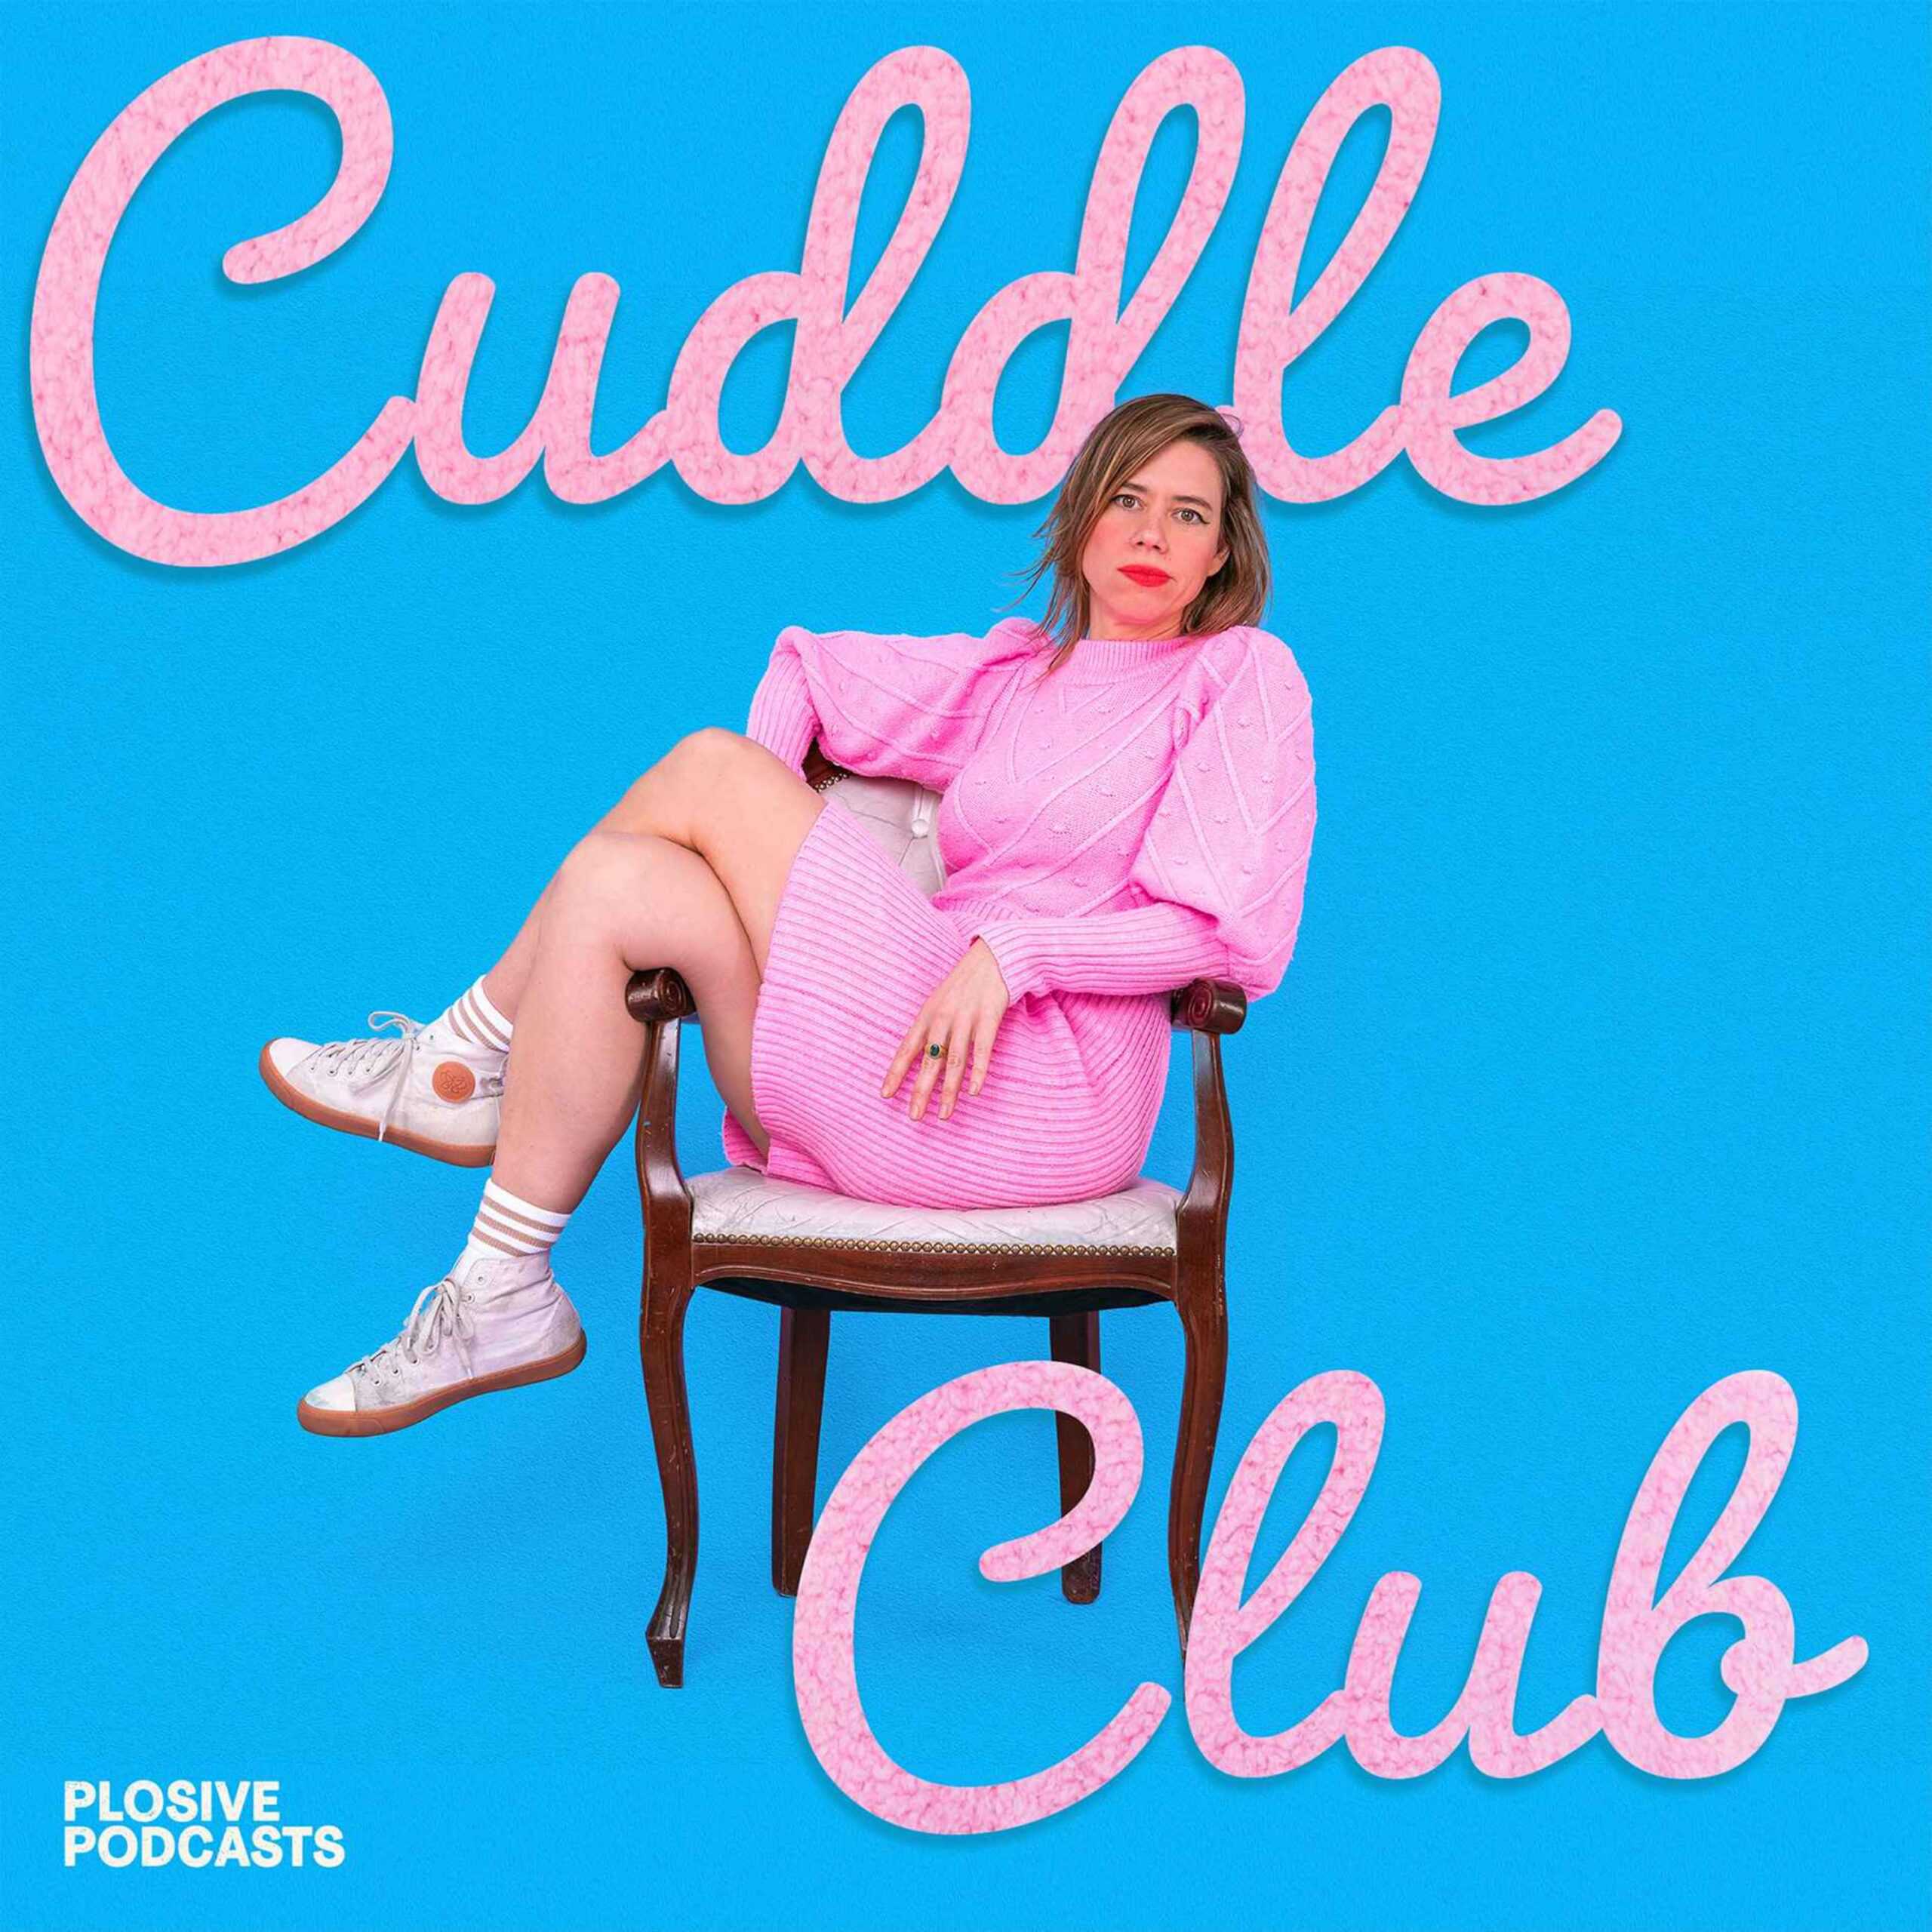 LS_Cuddle_Club